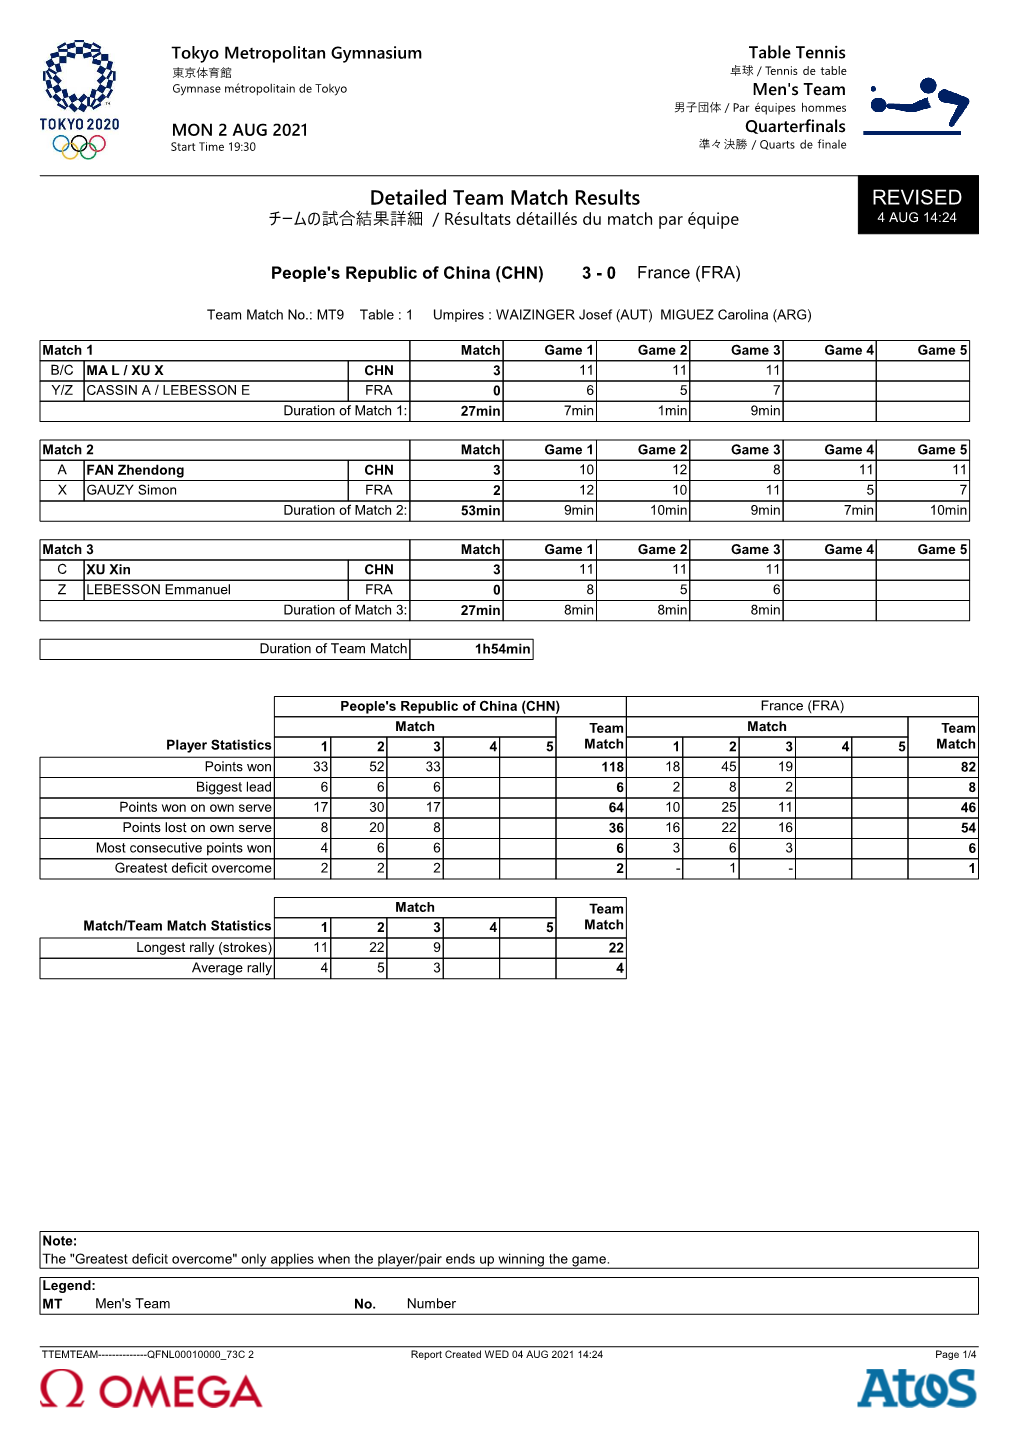 Detailed Team Match Results REVISED チームの試合結果詳細 / Résultats Détaillés Du Match Par Équipe 4 AUG 14:24